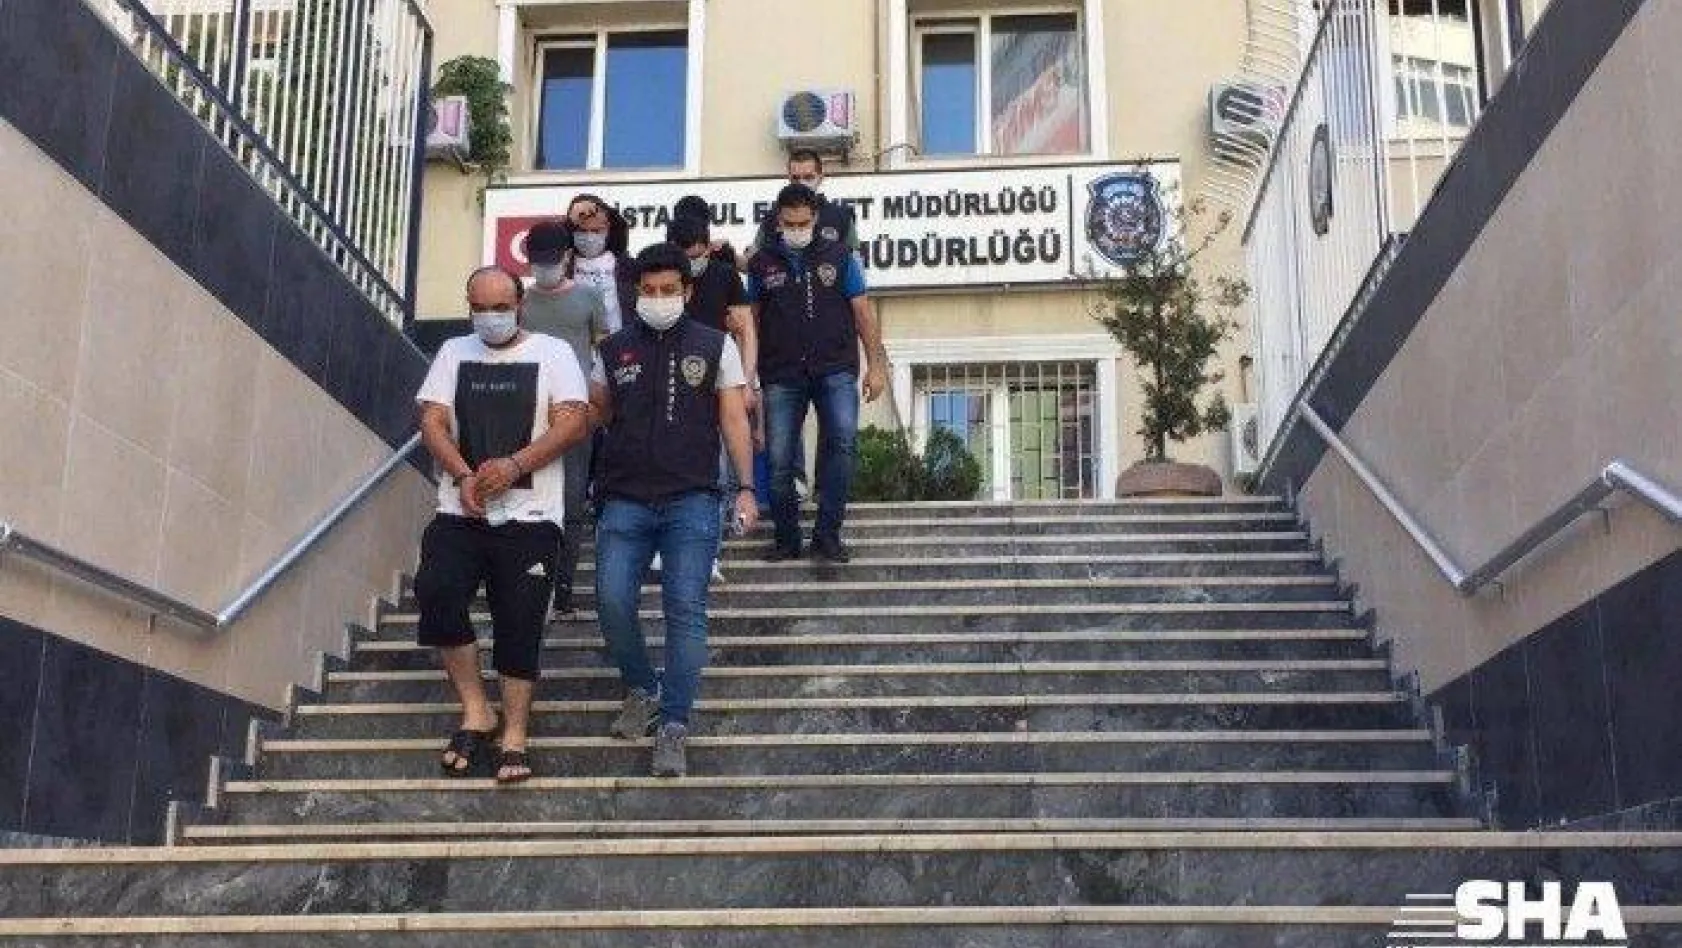 İstanbul ve Sakarya'da fuhuş operasyonu: 6 gözaltı